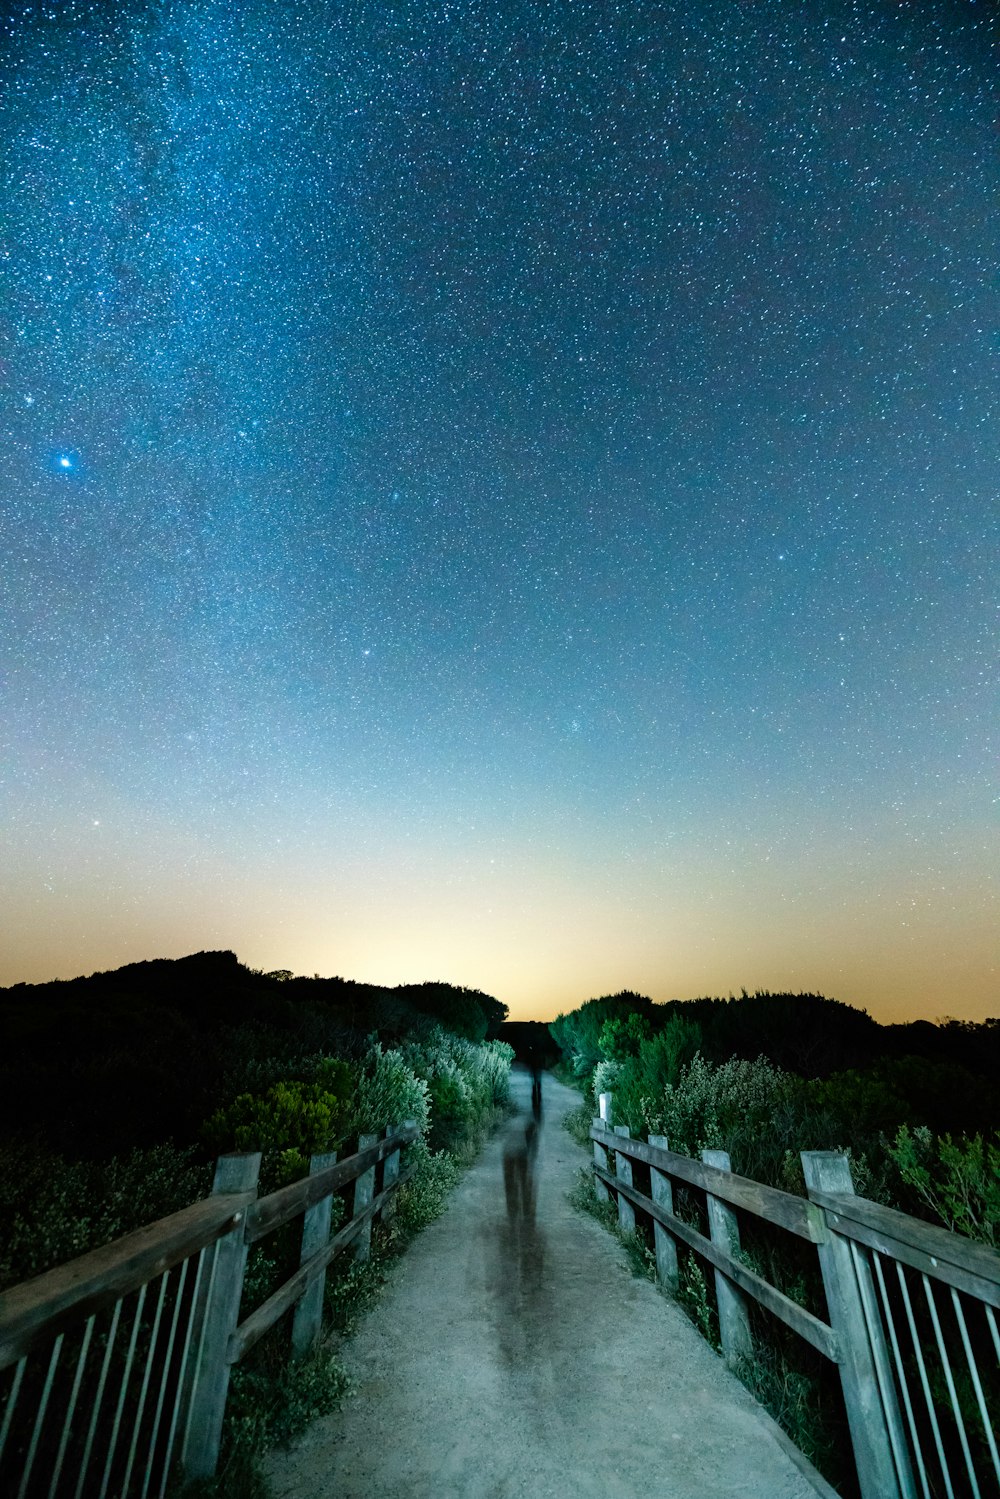 ponte de madeira cinza sob o céu noturno